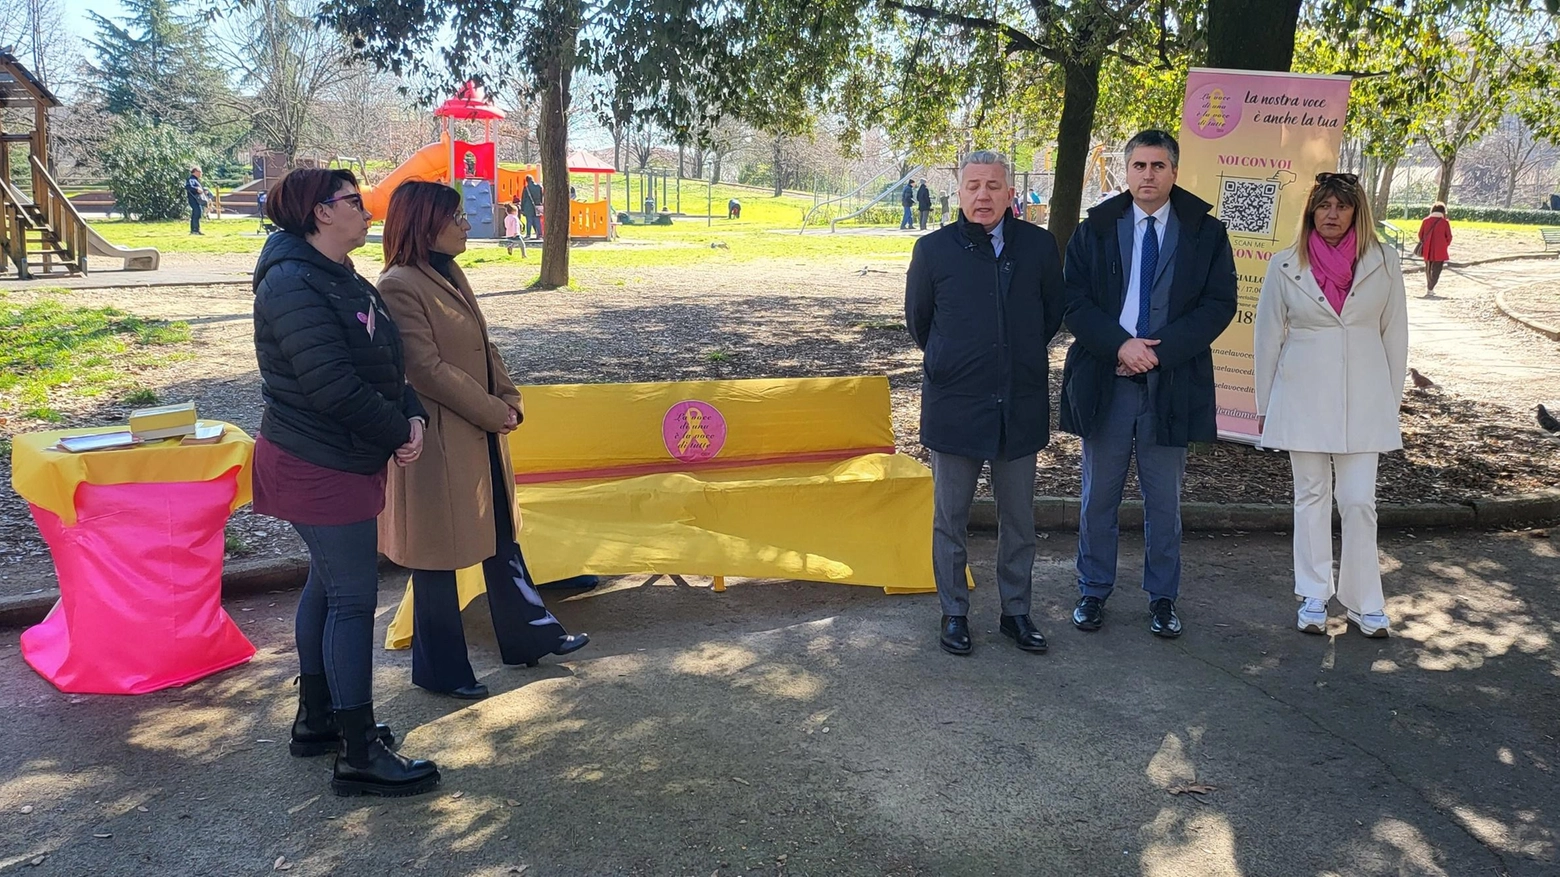 Una panchina gialla al Parco XXV Aprile  "La lotta all’endometriosi passa da qua"